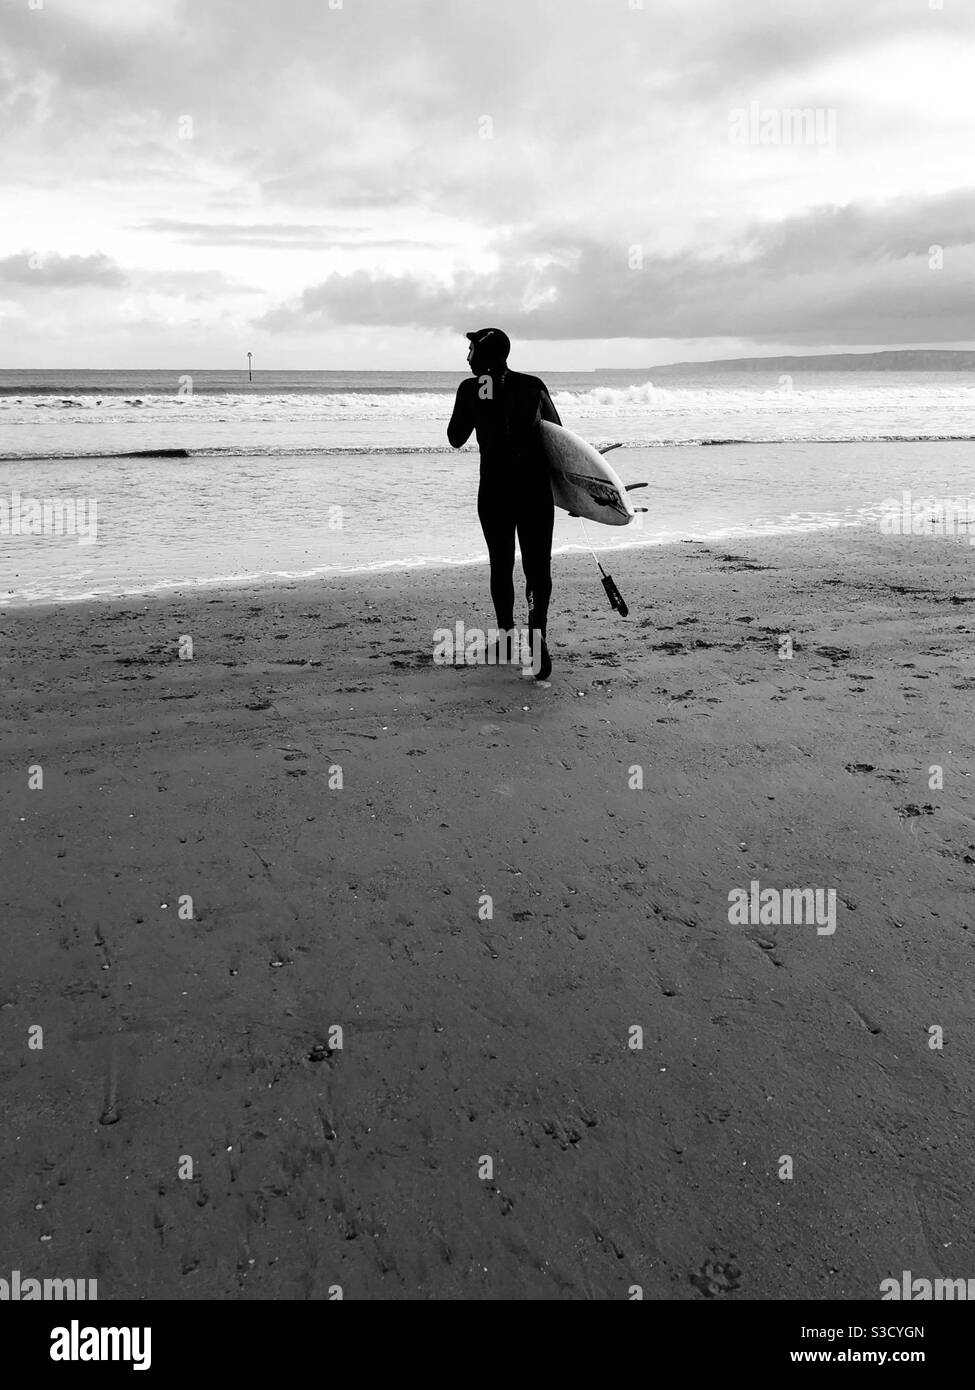 Image en noir et blanc d'un surfeur qui se présente sur un froid, jour d'hiver Banque D'Images